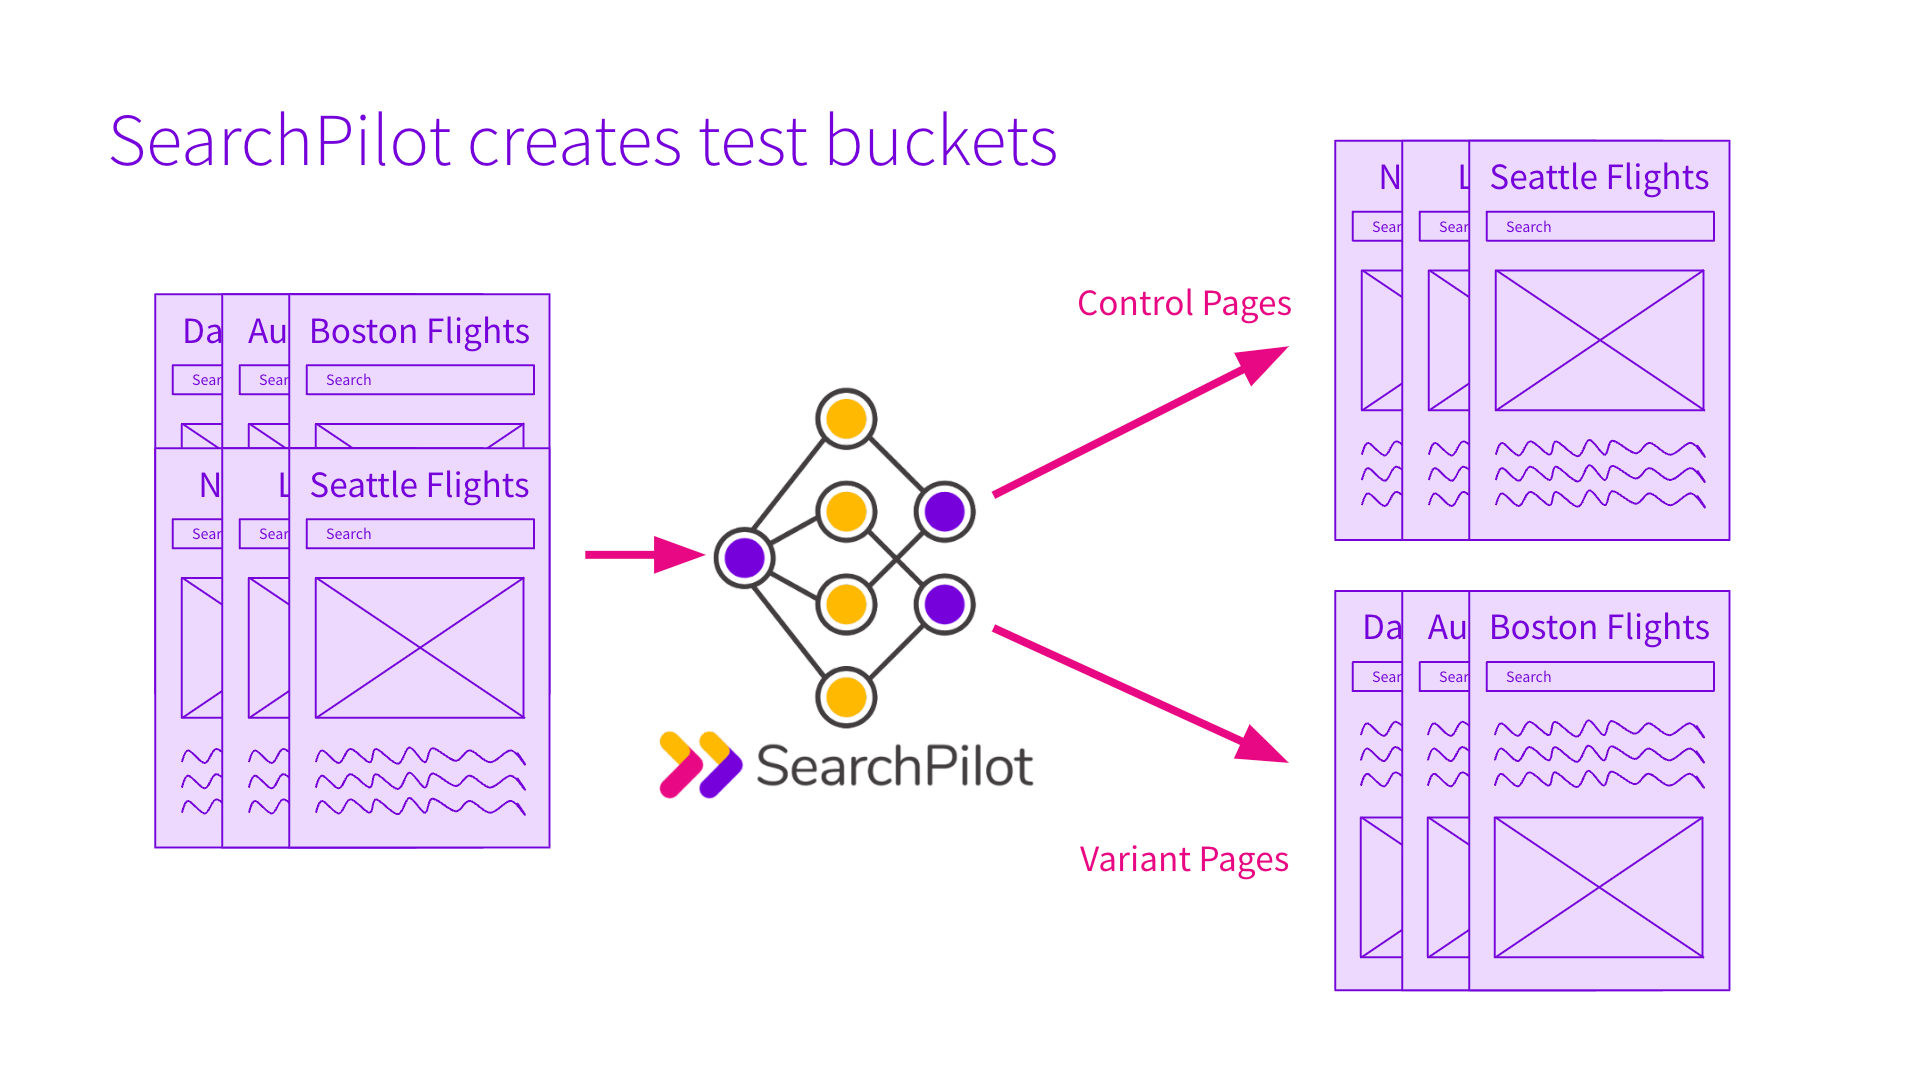 SearchPilot creates test buckets